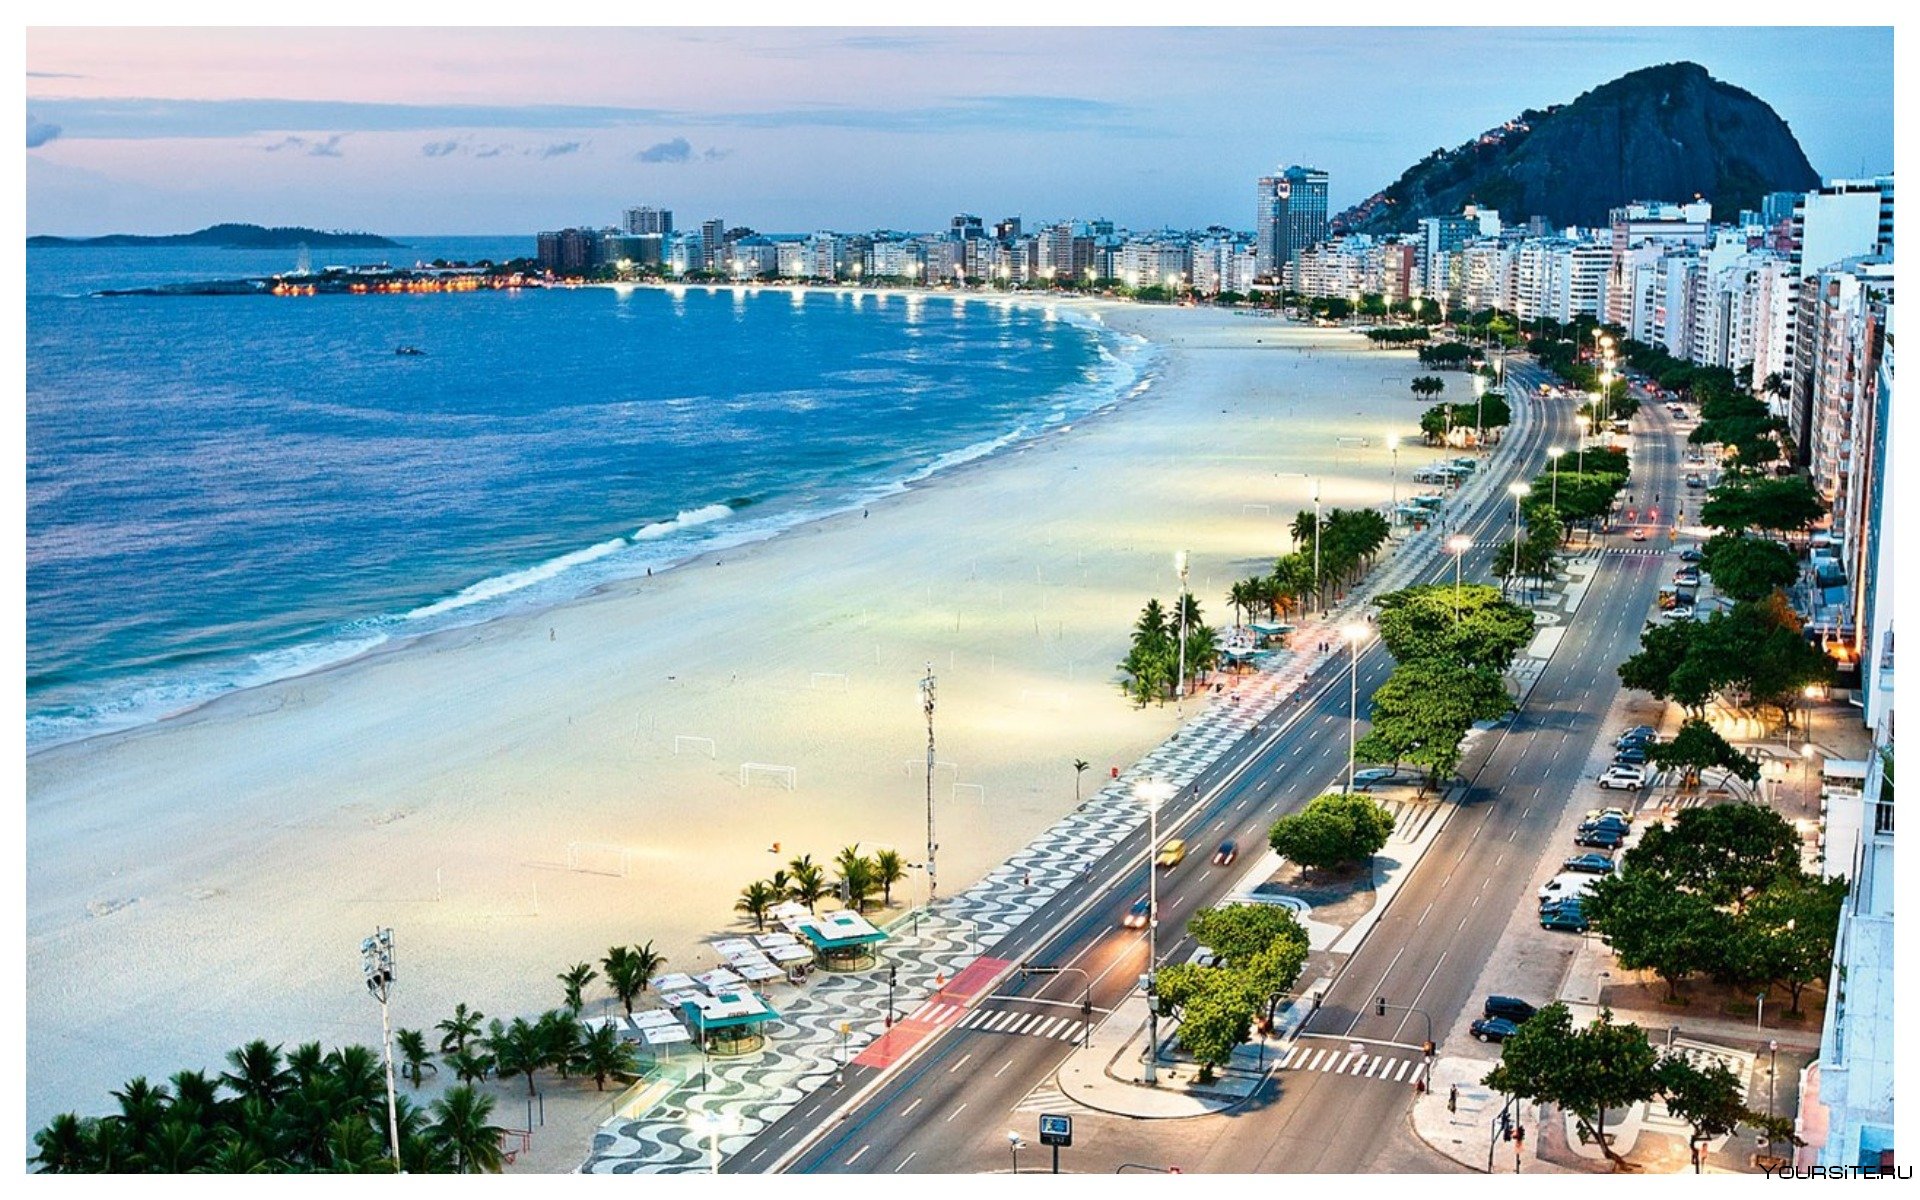 Рекреационные пляжи. Пляж Копакабана в Рио-де-Жанейро. Бразилия пляж Копакабана. Копакабана, Рио-де-Жанейро, Бразилия. Пляж в Рио Копакабана.